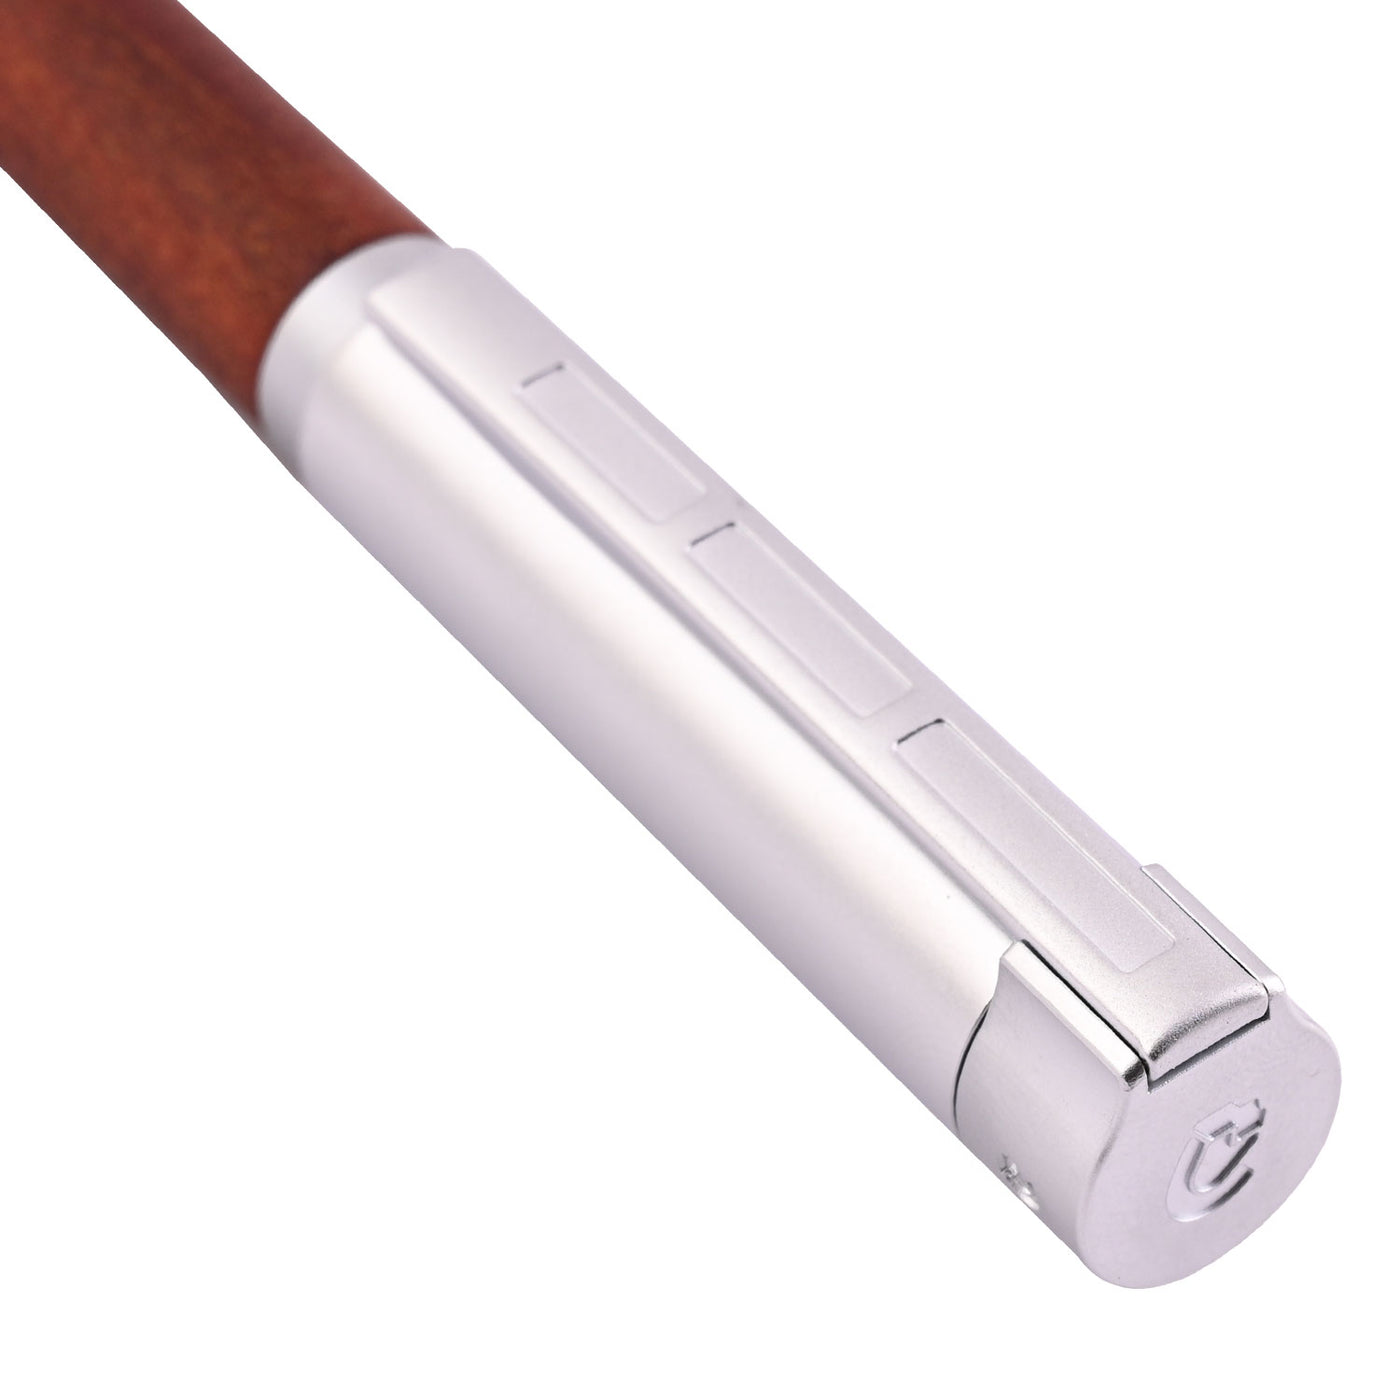 Staedtler Premium Lignum Fountain Pen - Plum Wood CT